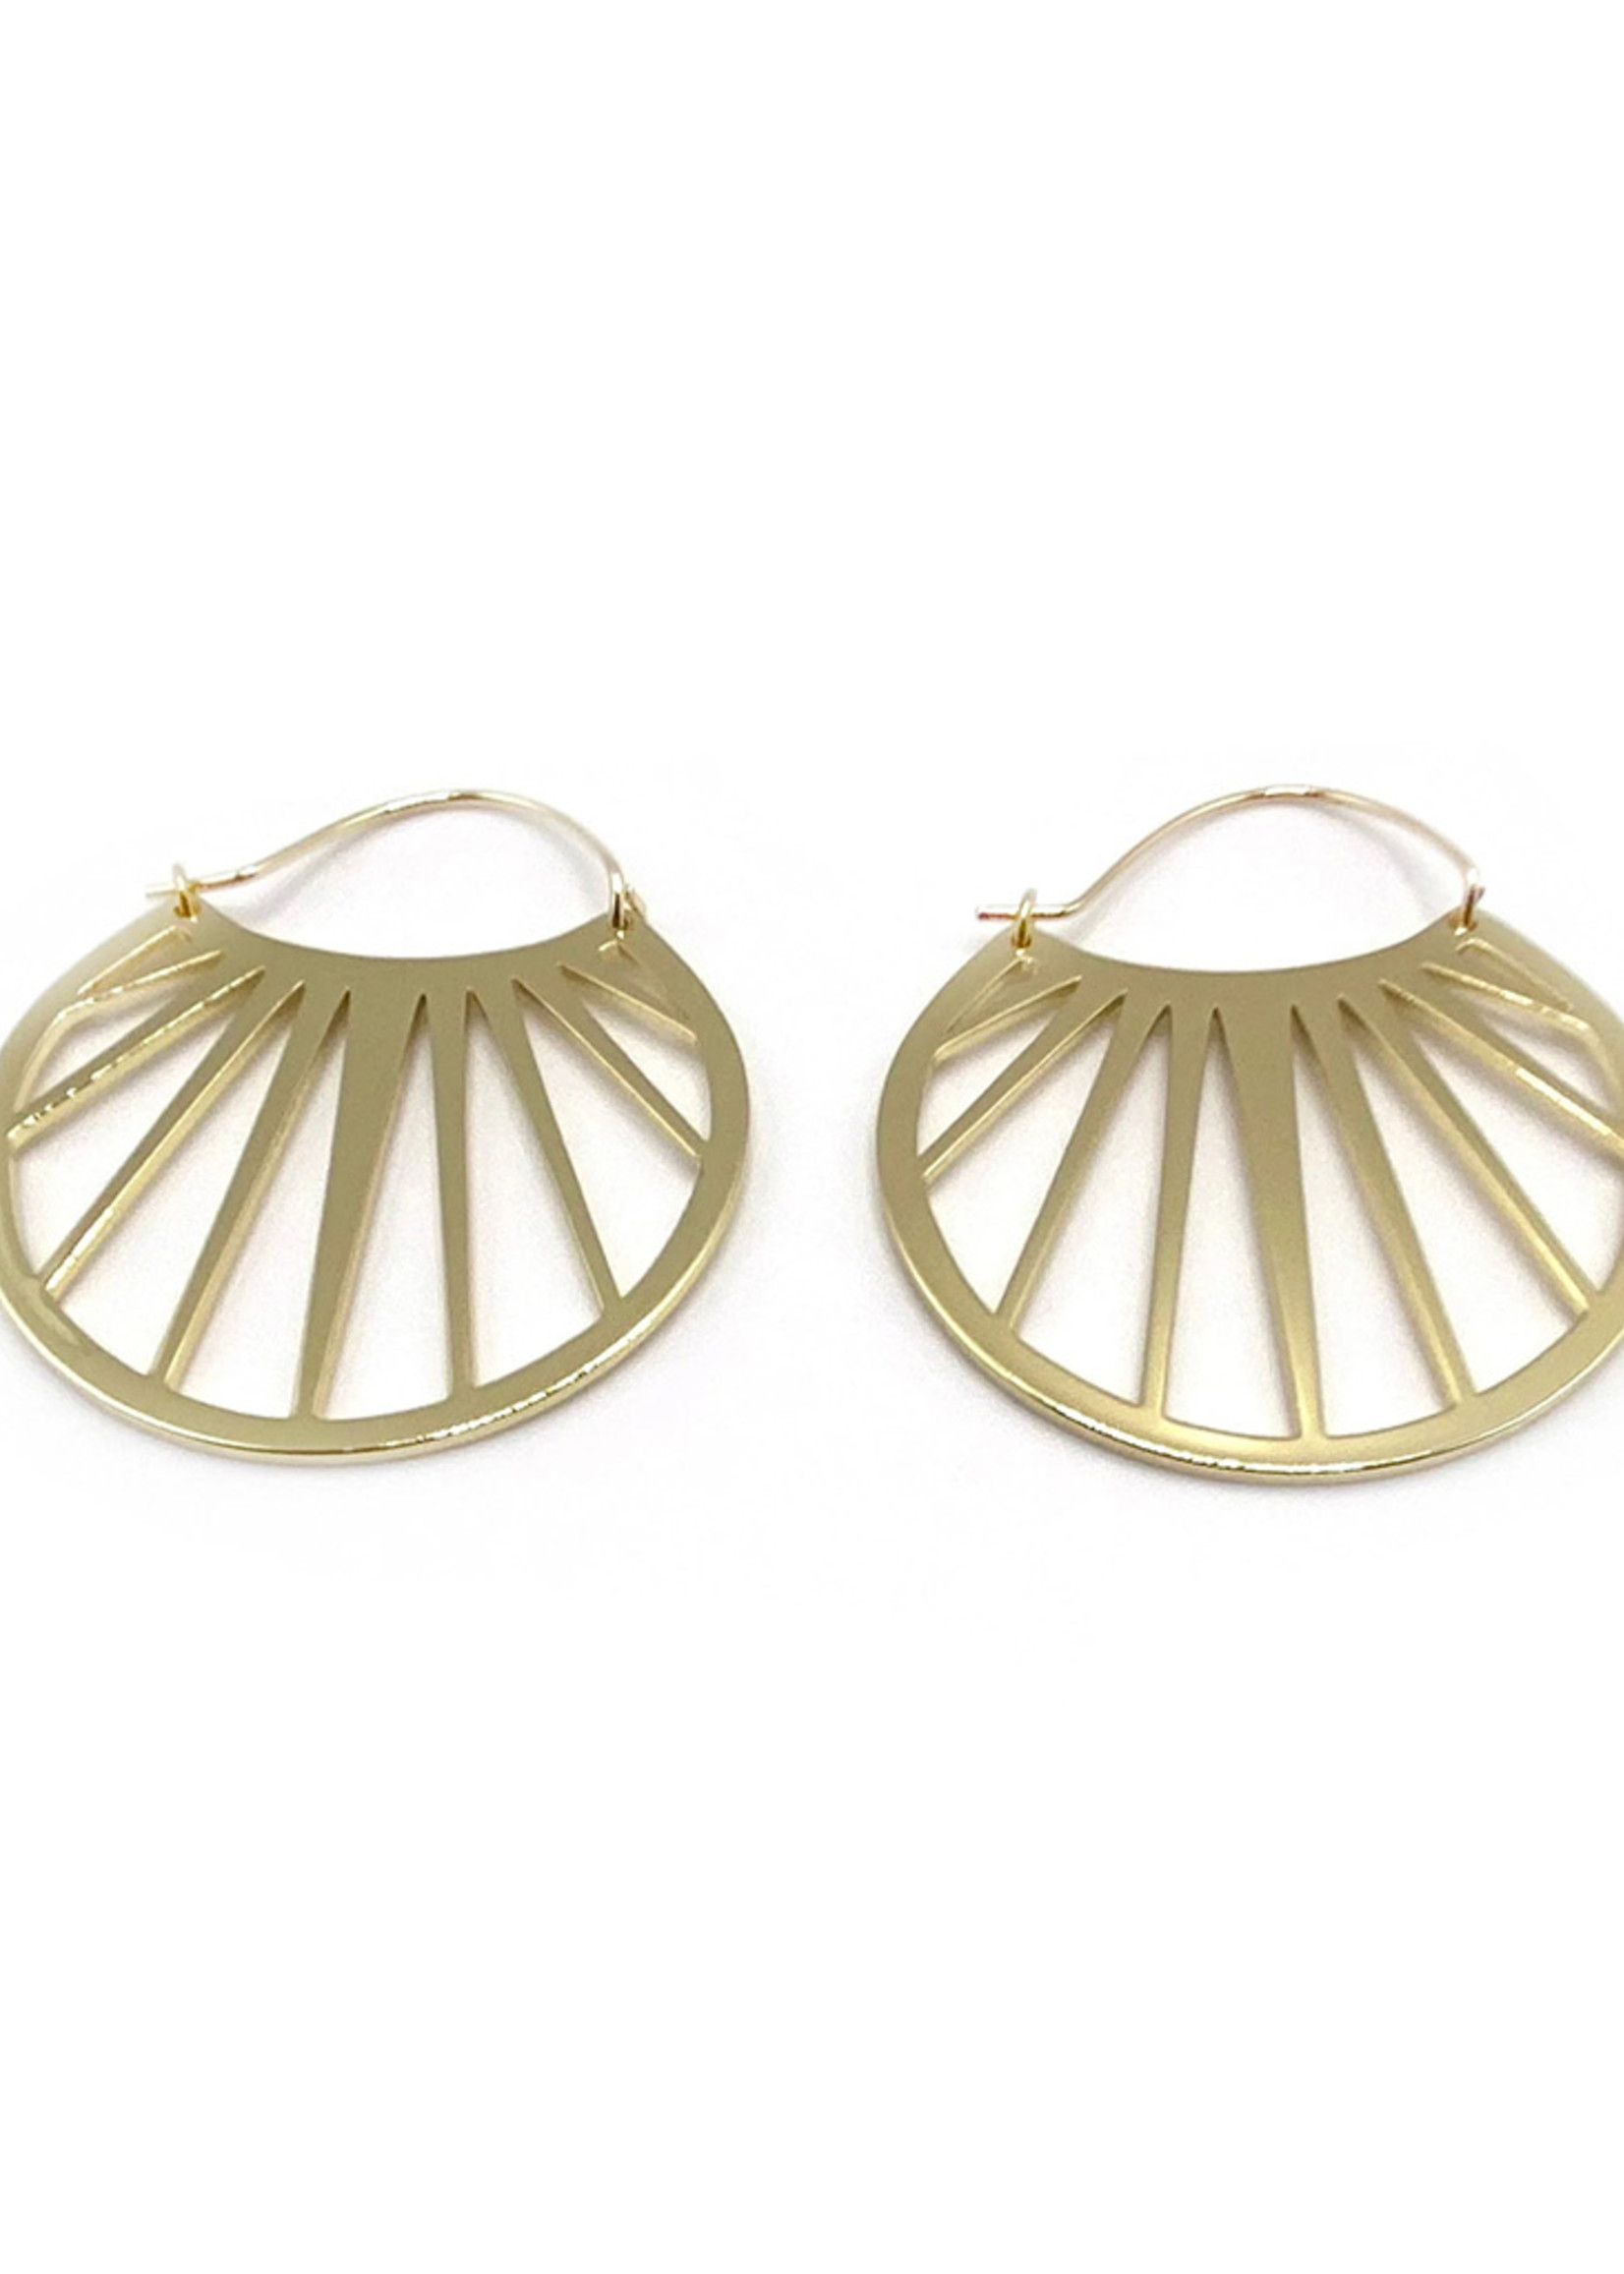 Purpose Jewelry Bali Hoops Earrings